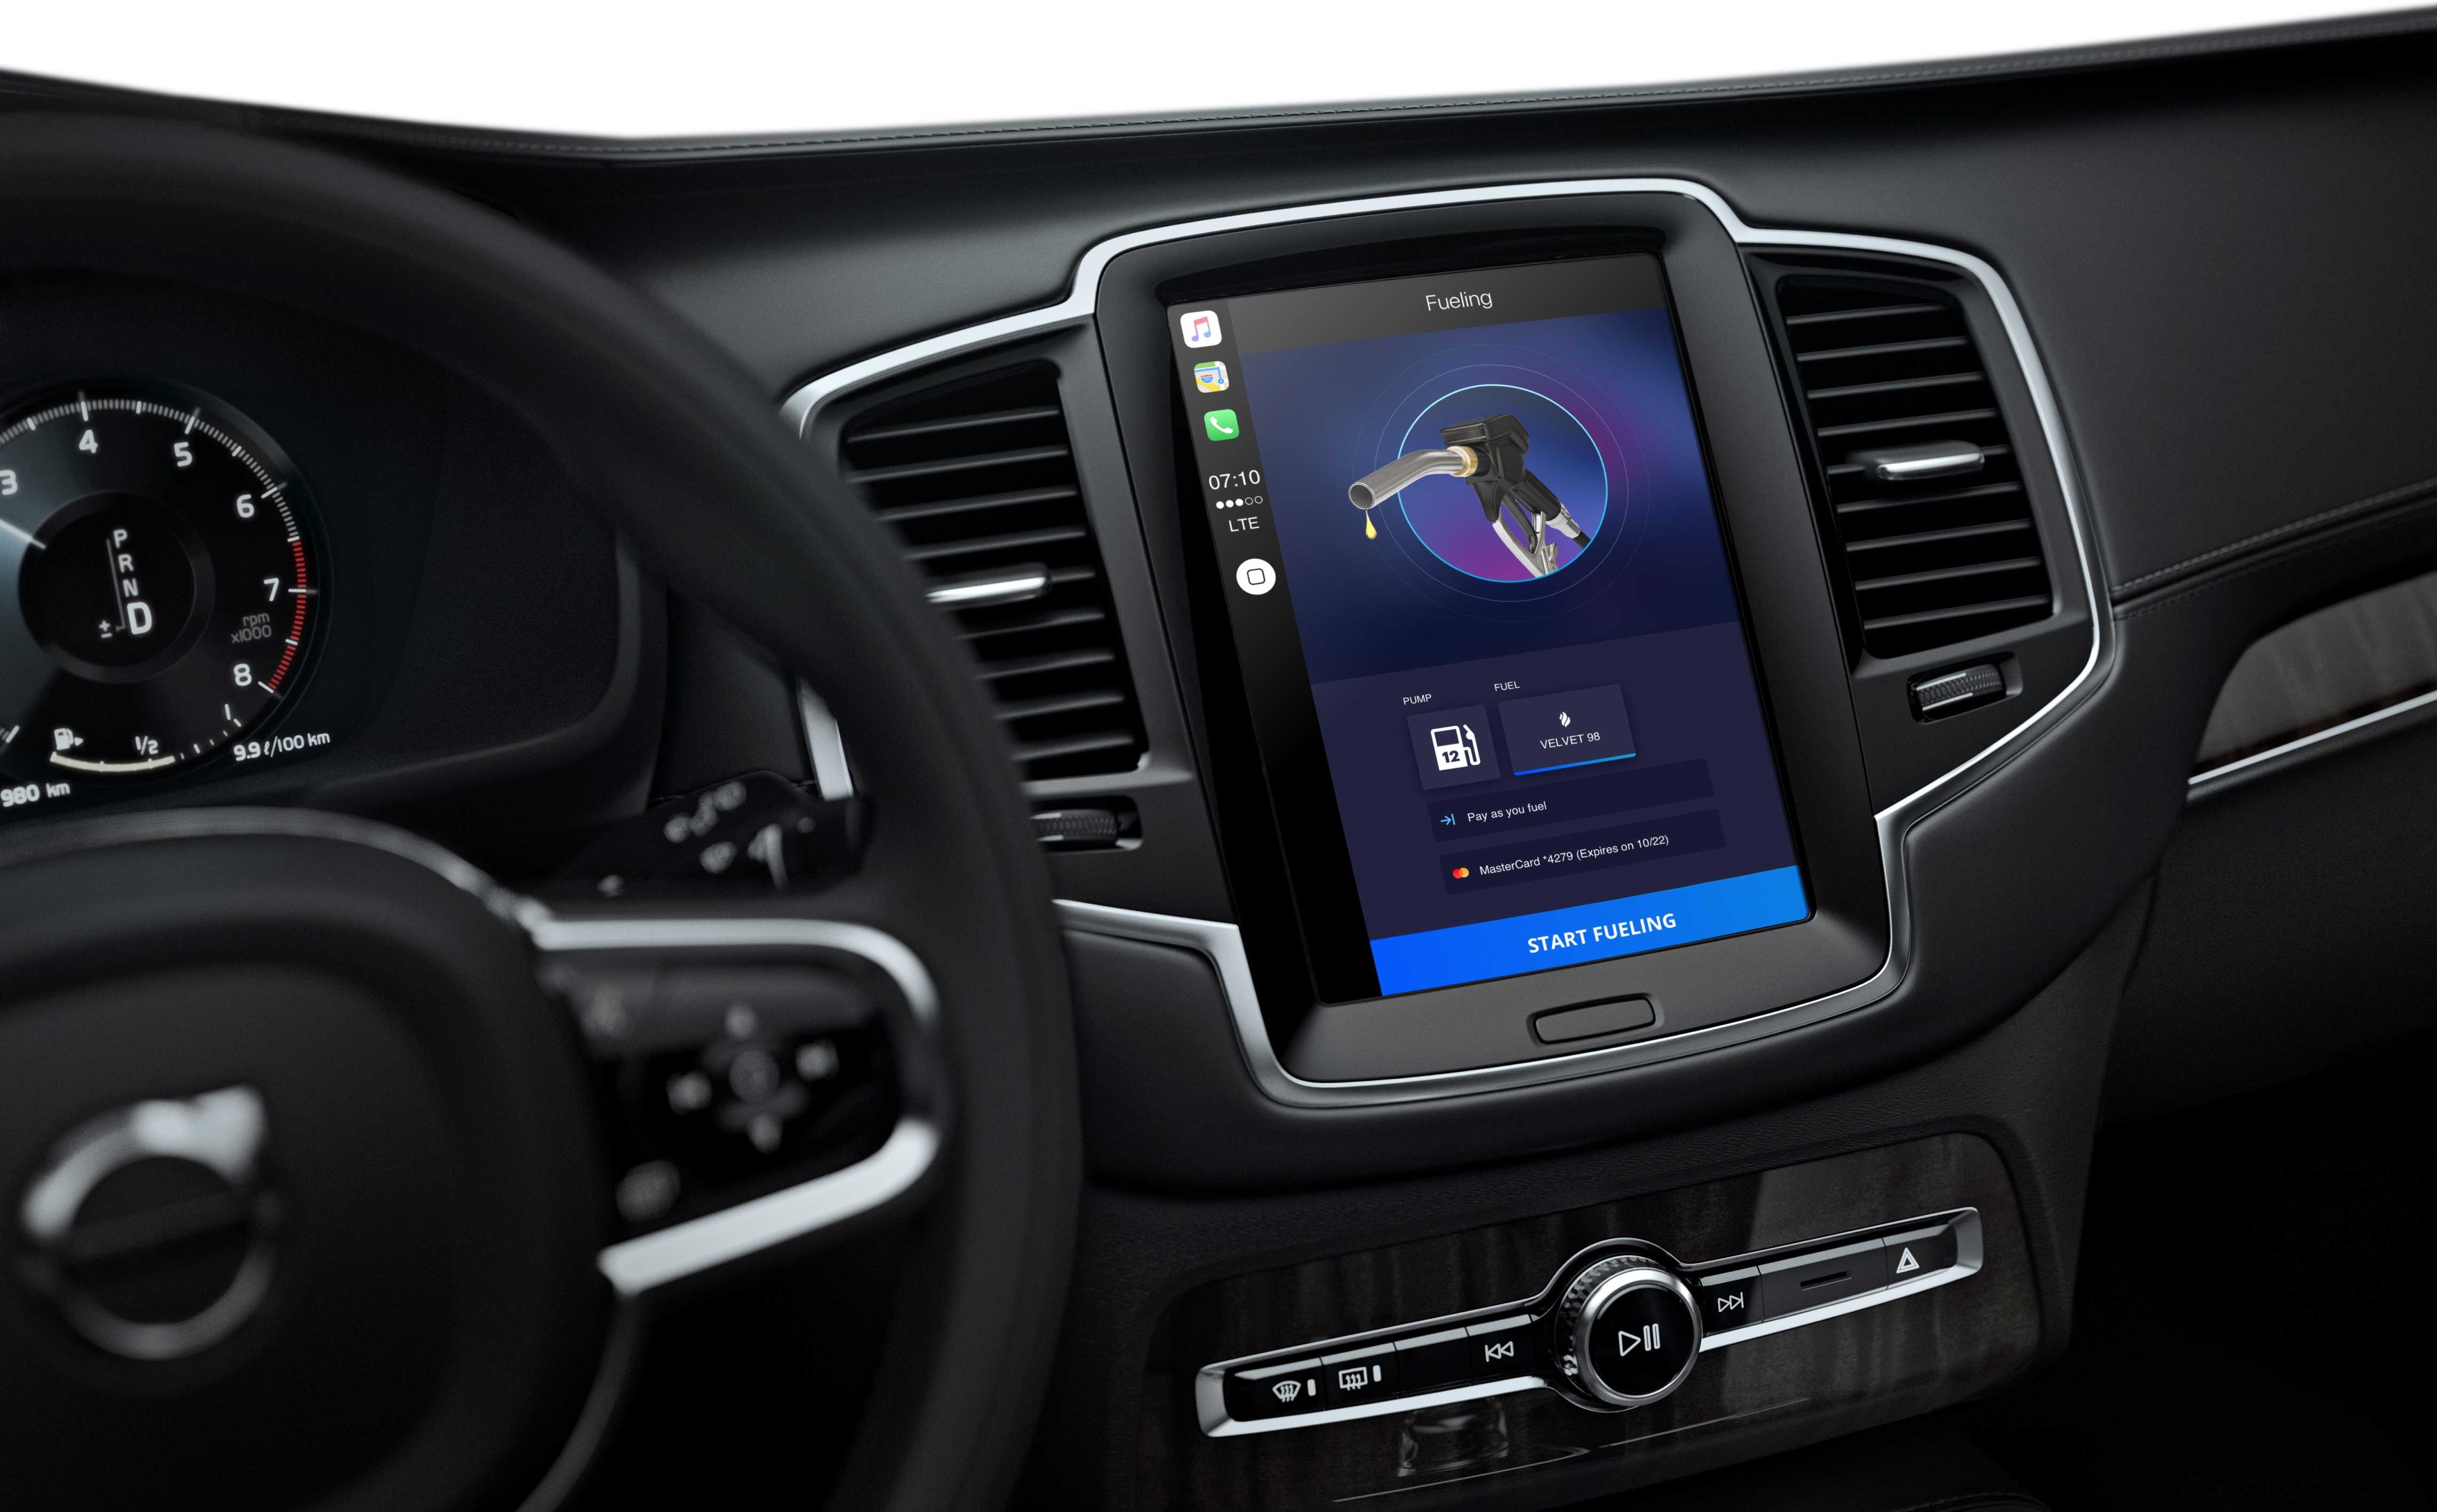 Bilens instrumentpanel med car play-app-grensesnitt for bensinstasjonskjede